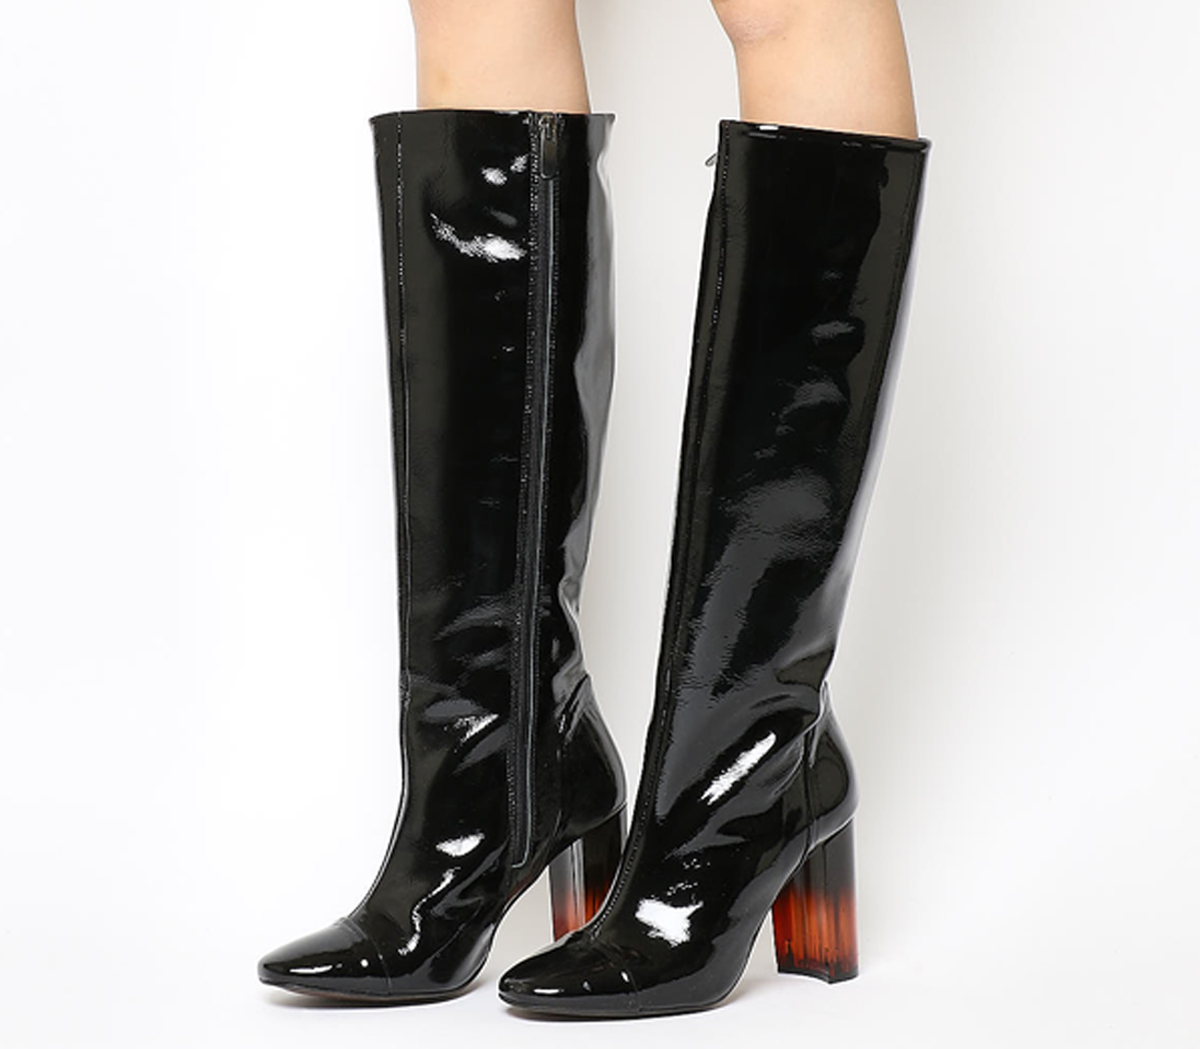 OFFICEEli Square Toe Knee BootsBlack Patent Leather Heel